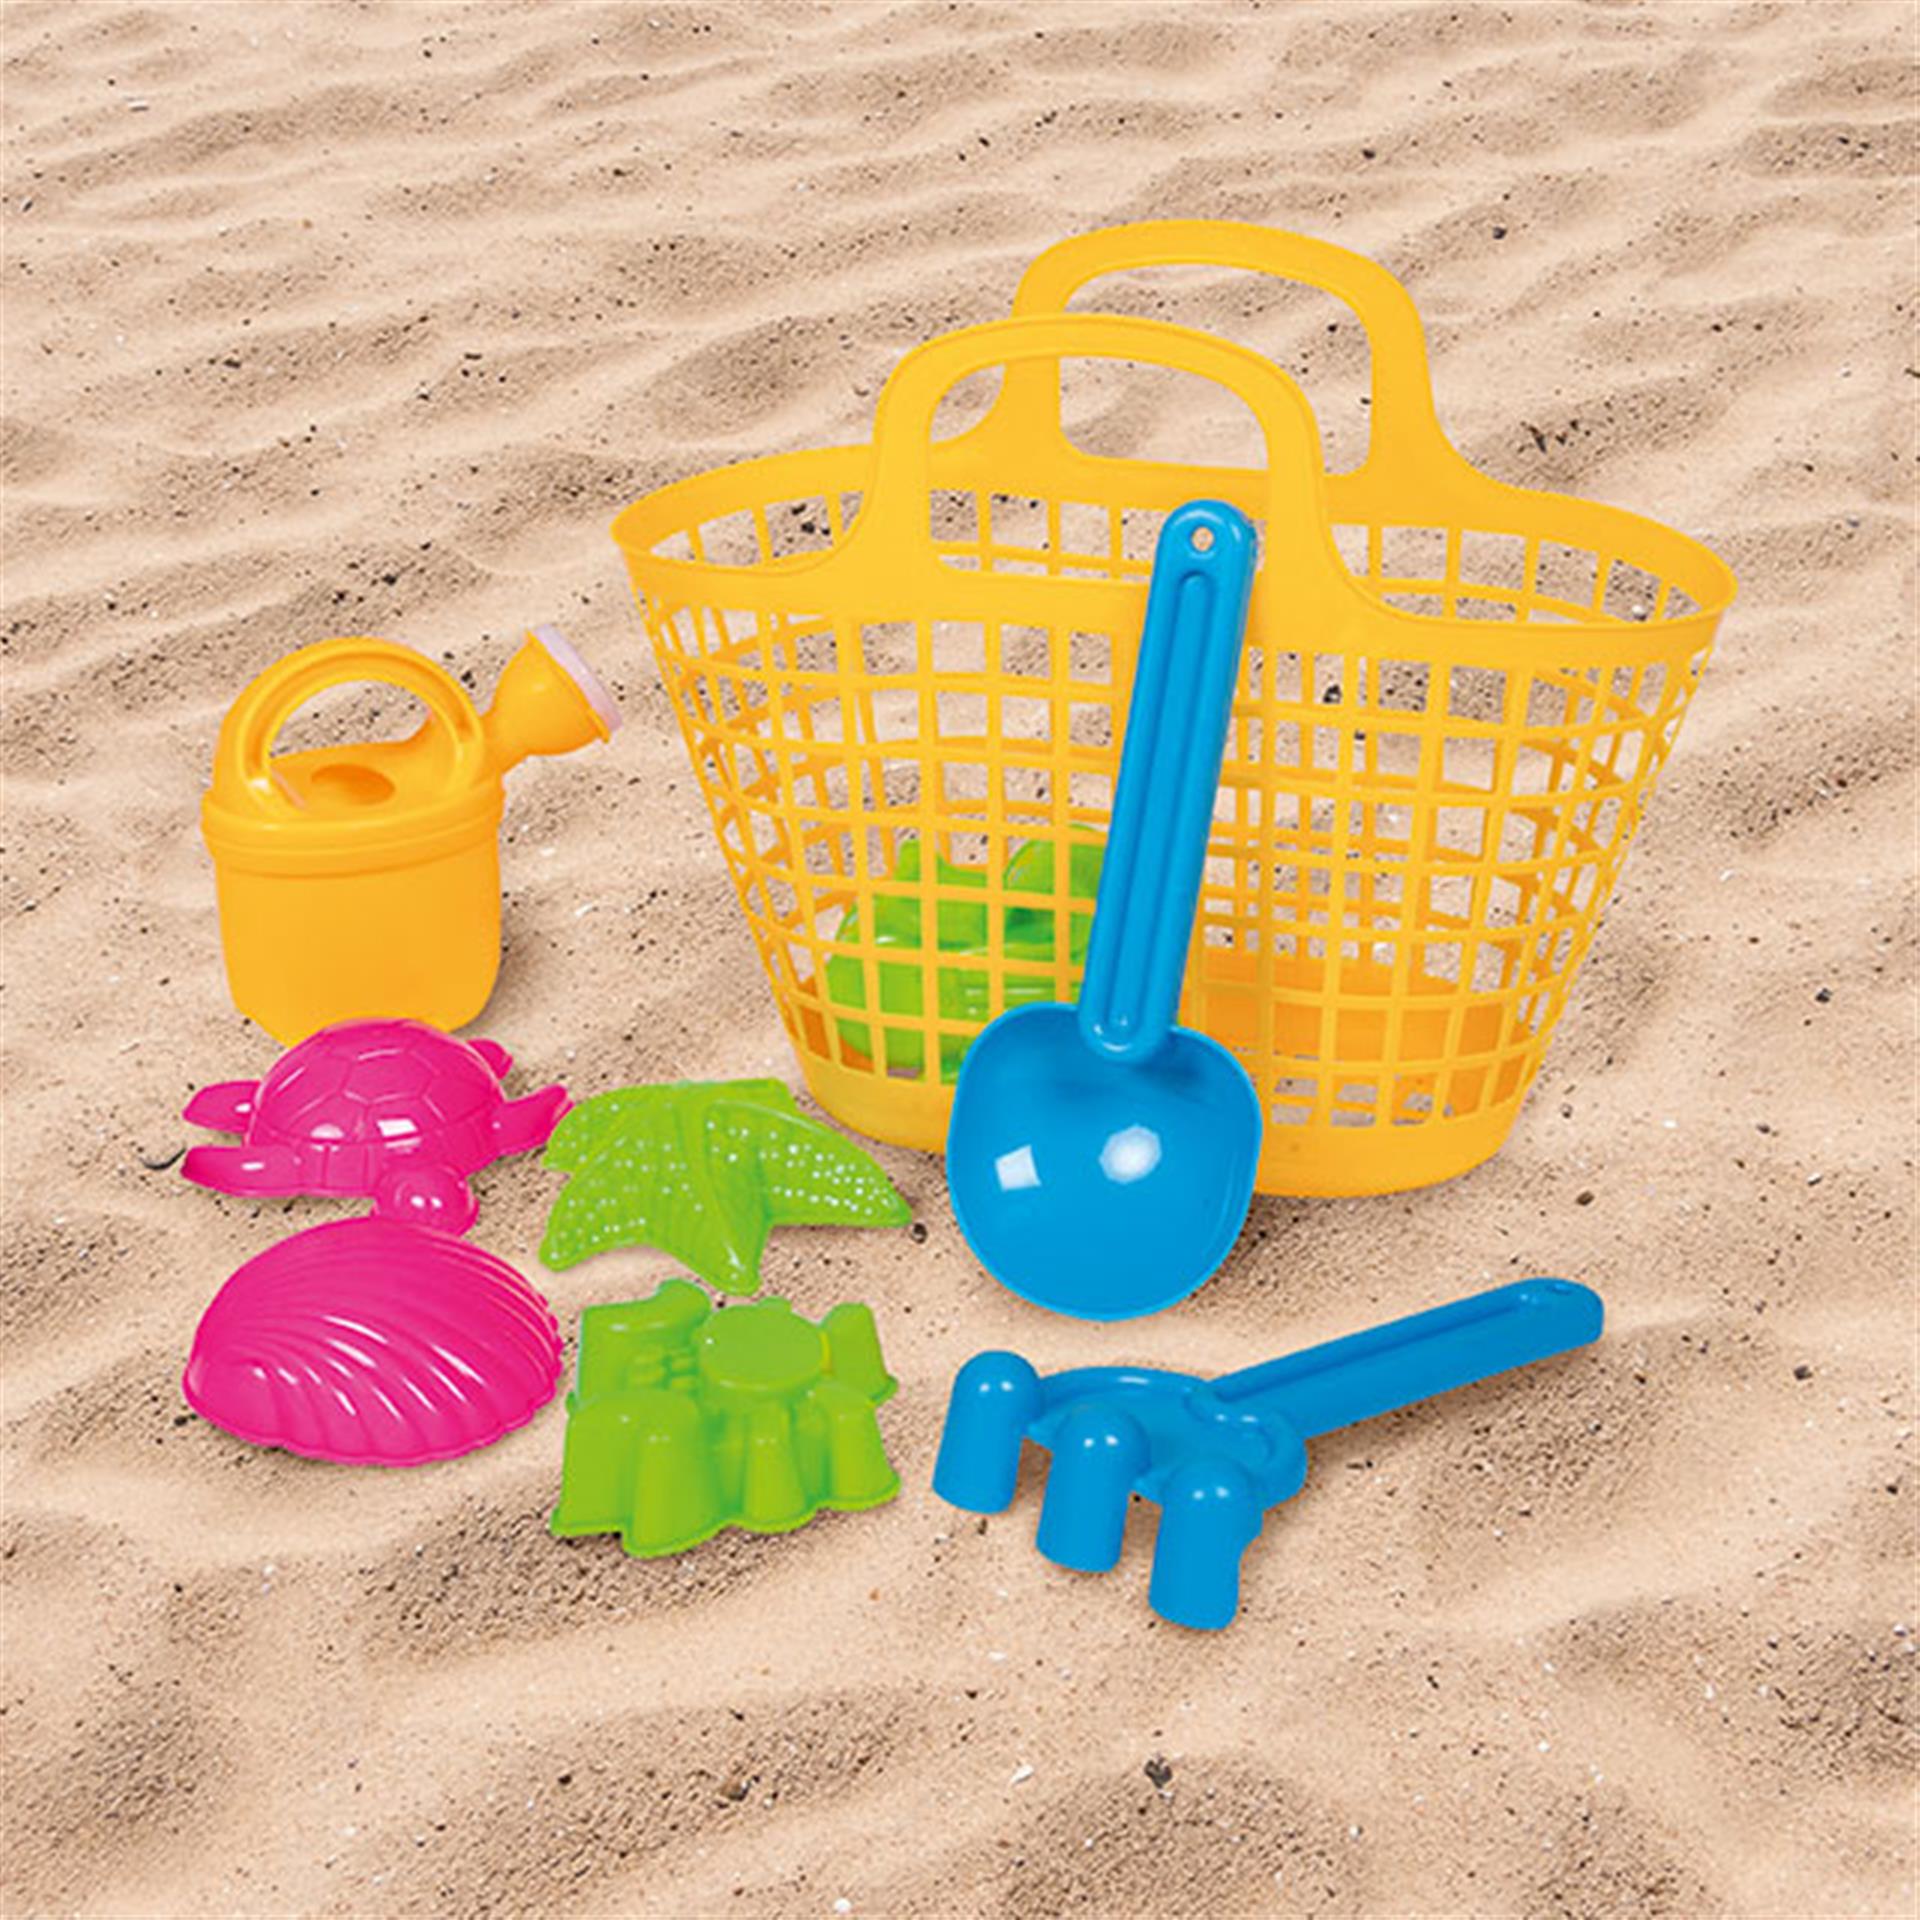 Sporta di giocattoli per la sabbia, 9 pezzi